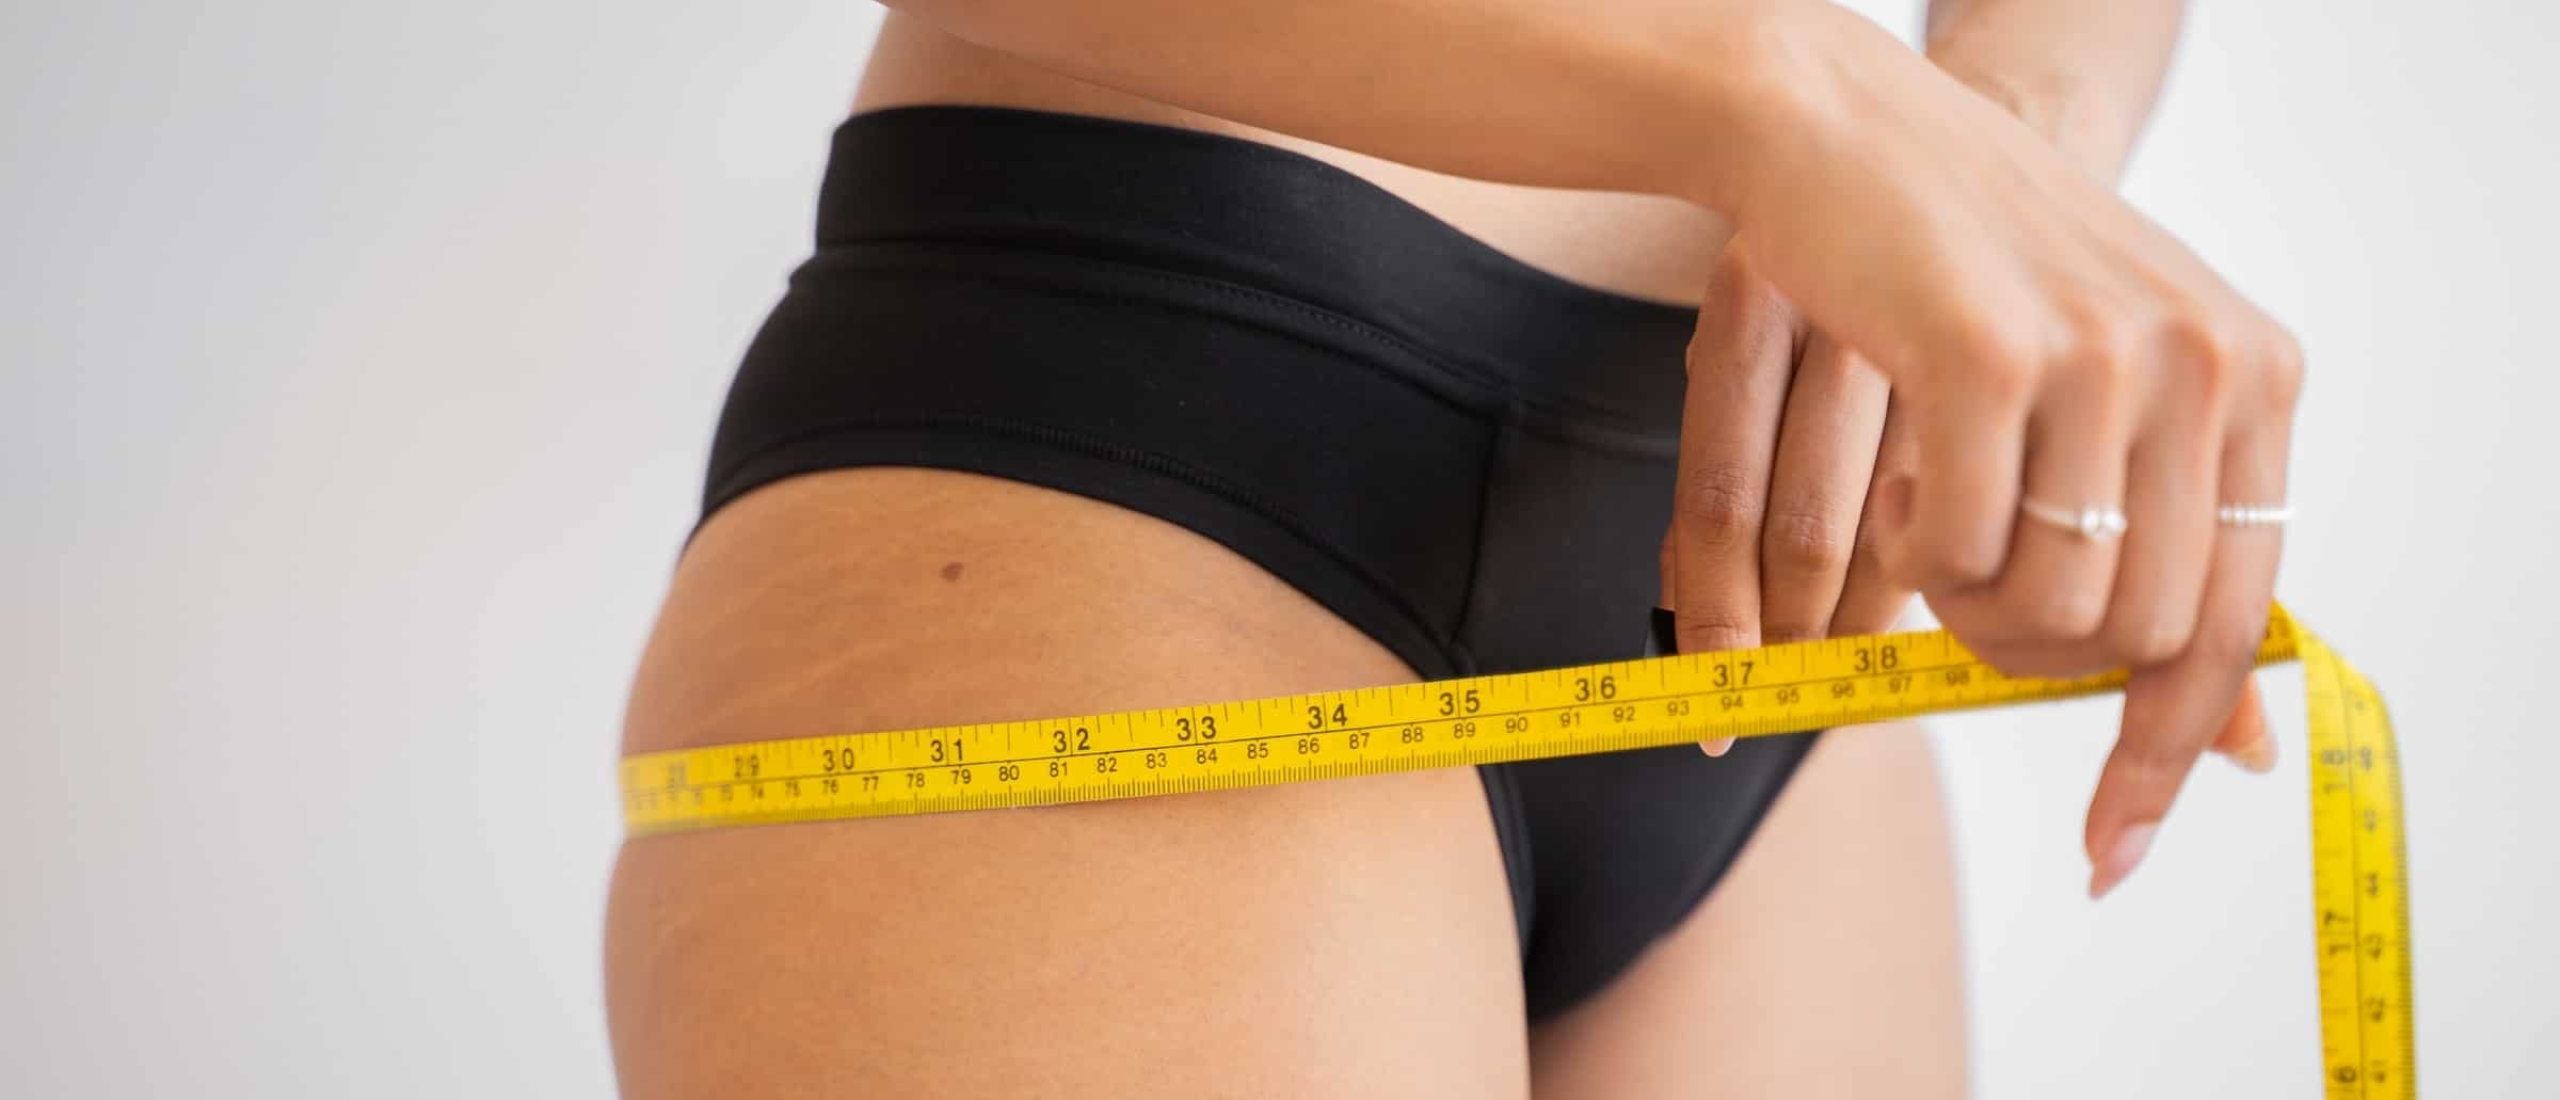 Waar moet je meten als je gewicht verliest?